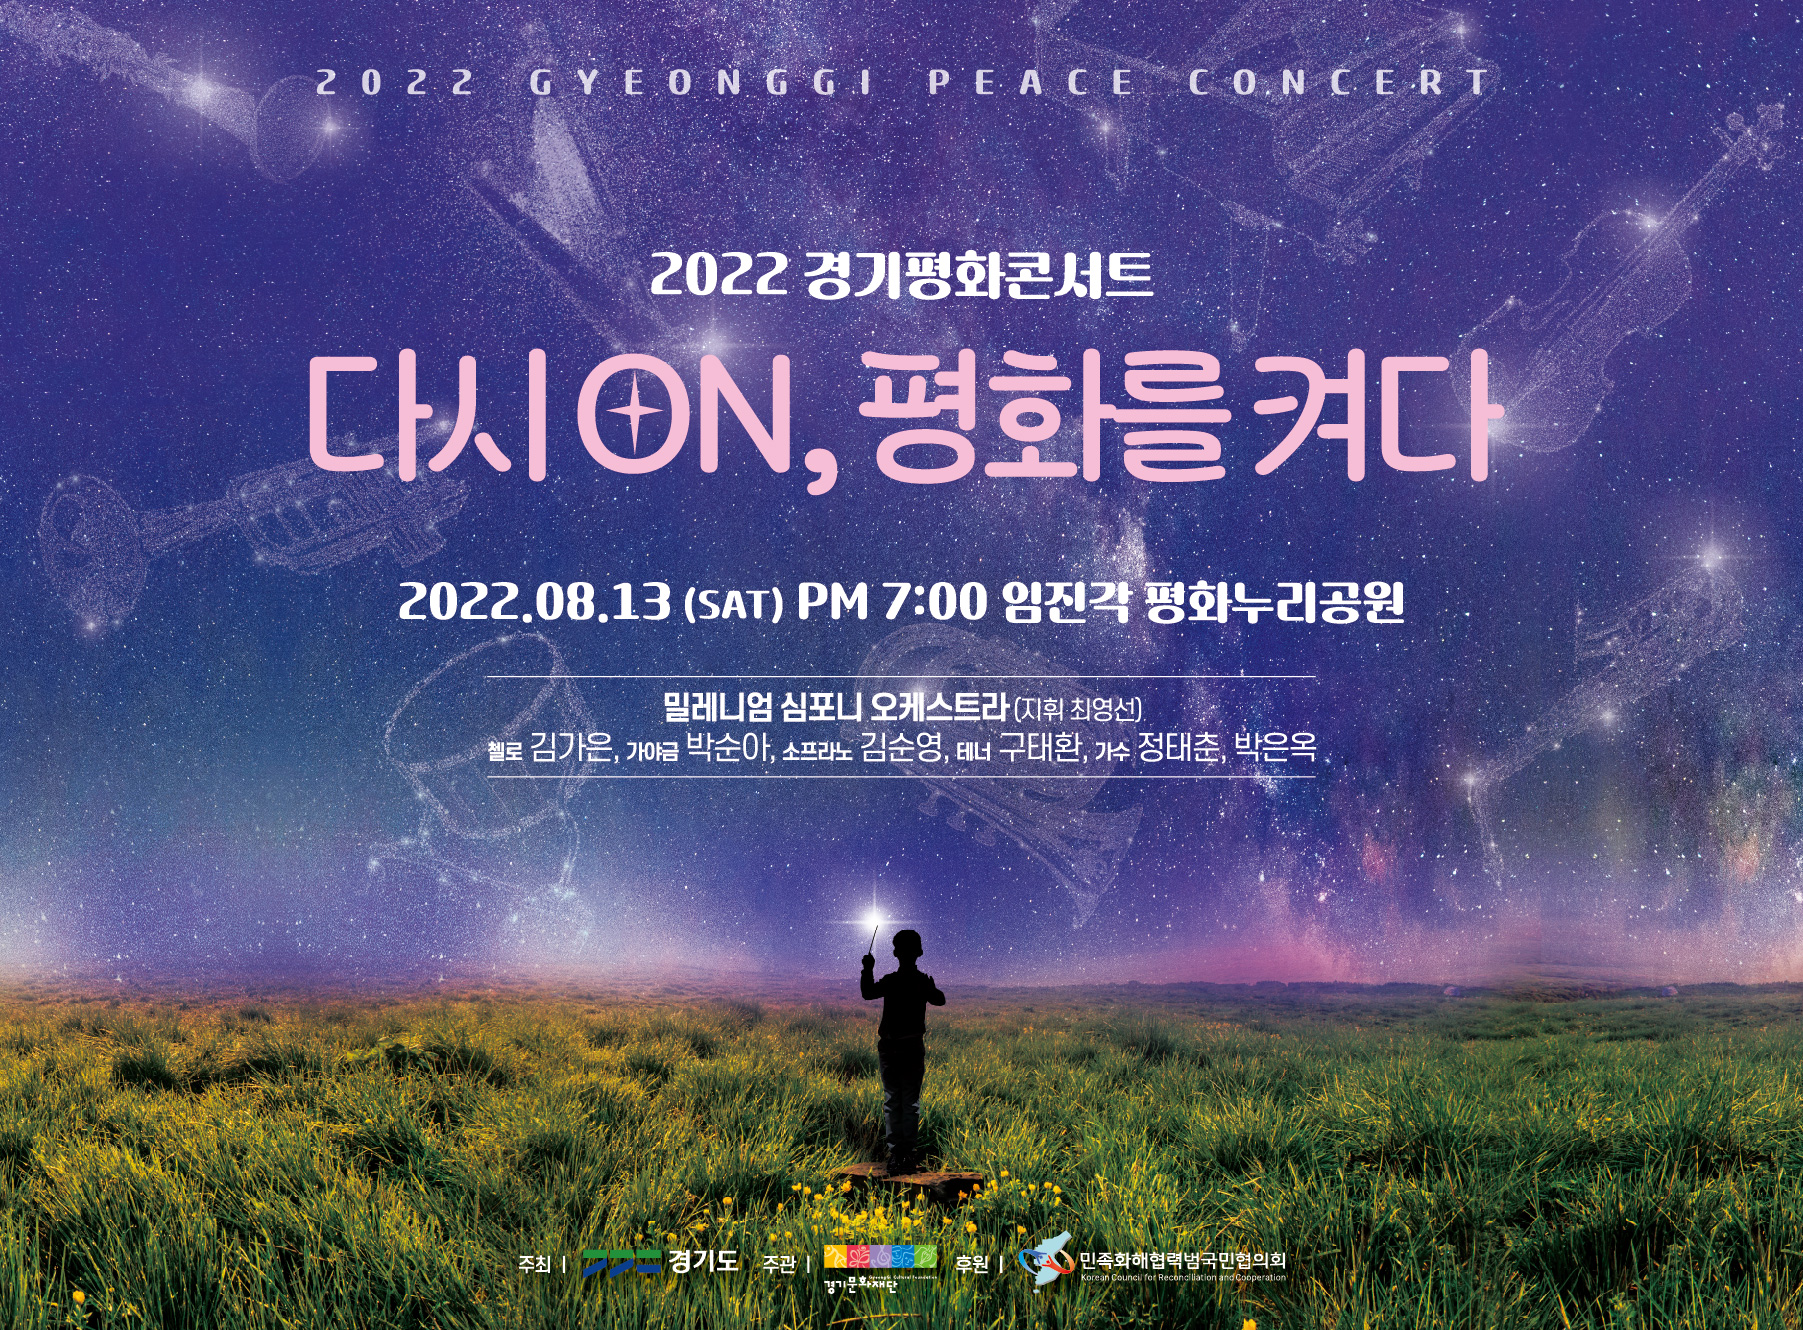 경기도는 오는 13일 오후 7시부터 임진각 평화누리 야외공연장에서 ‘2022 경기평화콘서트’를 개최한다.